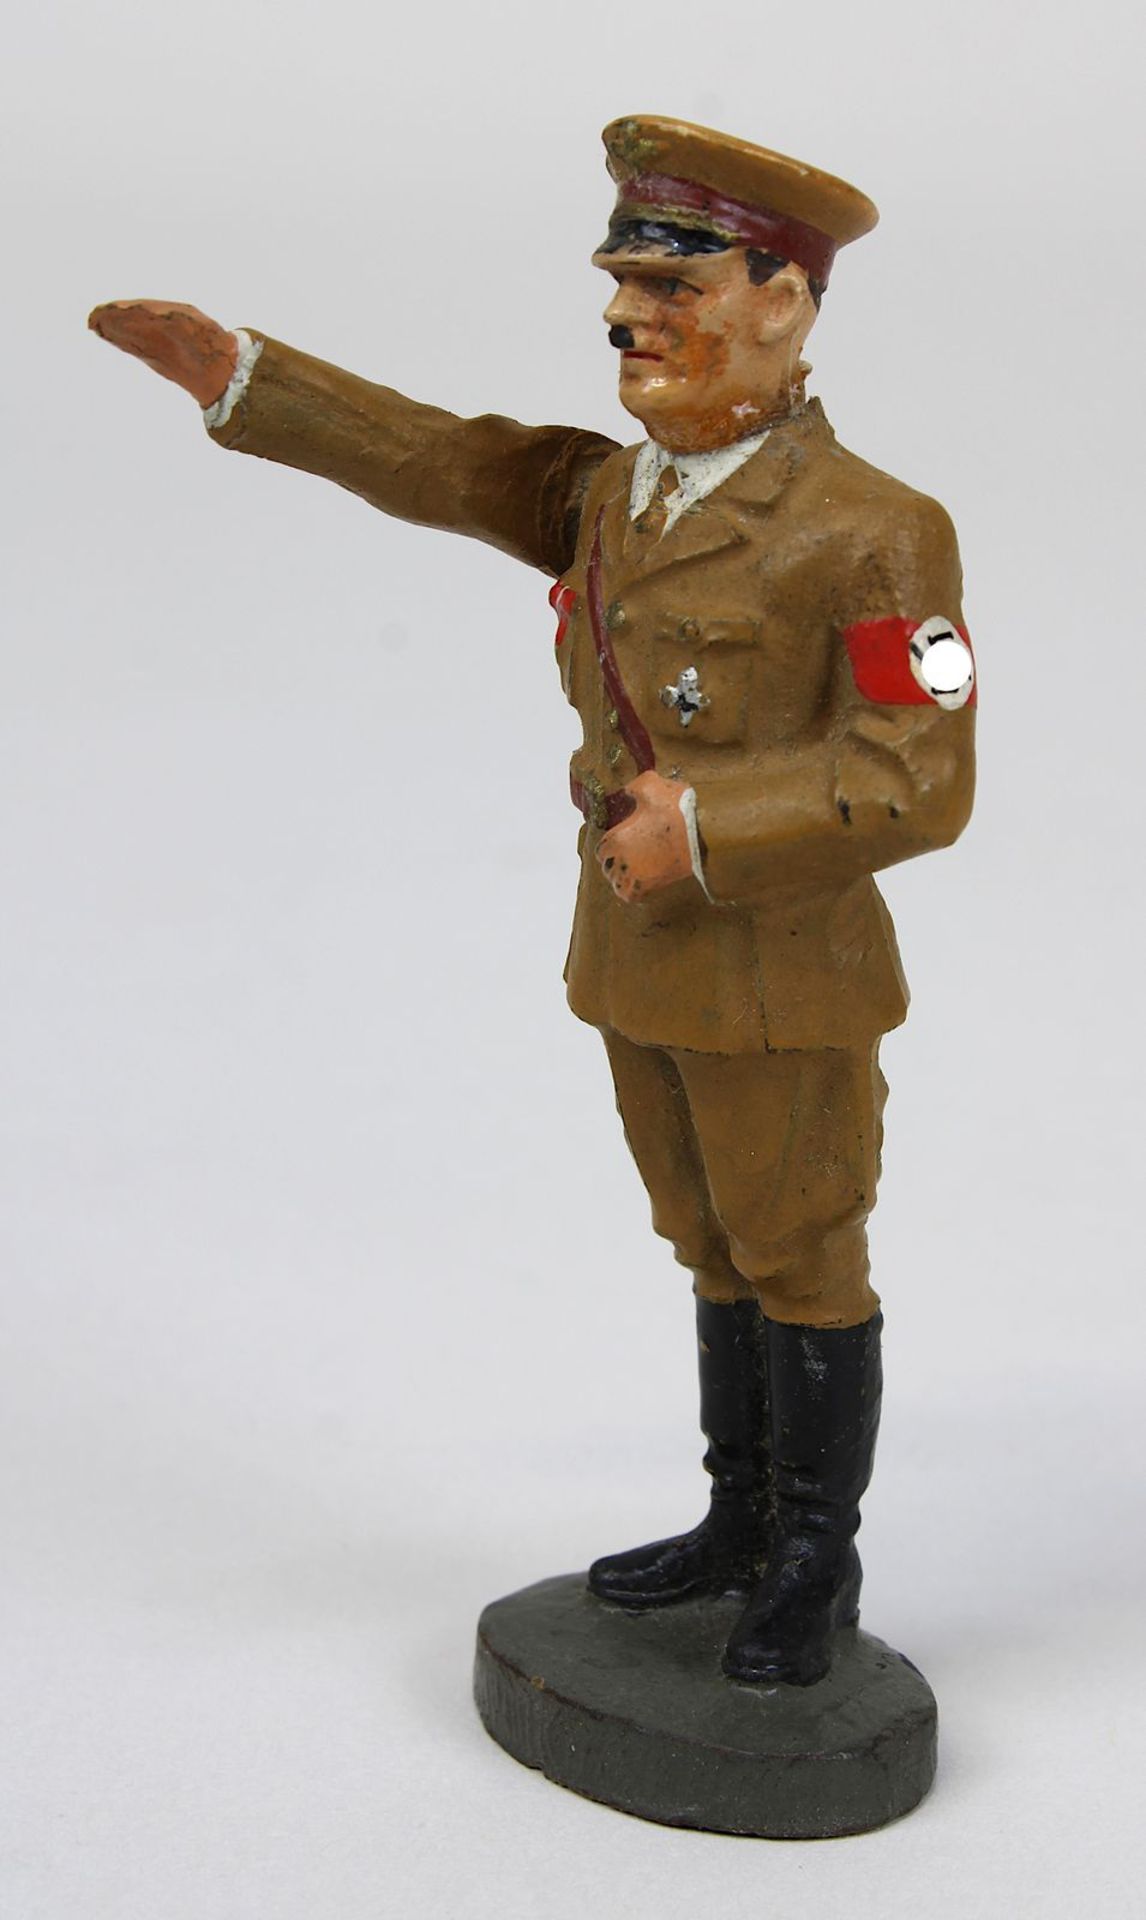 Elastolinfigur Adol Hitler, Deutsches Reich 1933 - 1945, mit beweglichem rechten Arm, Kopf auf